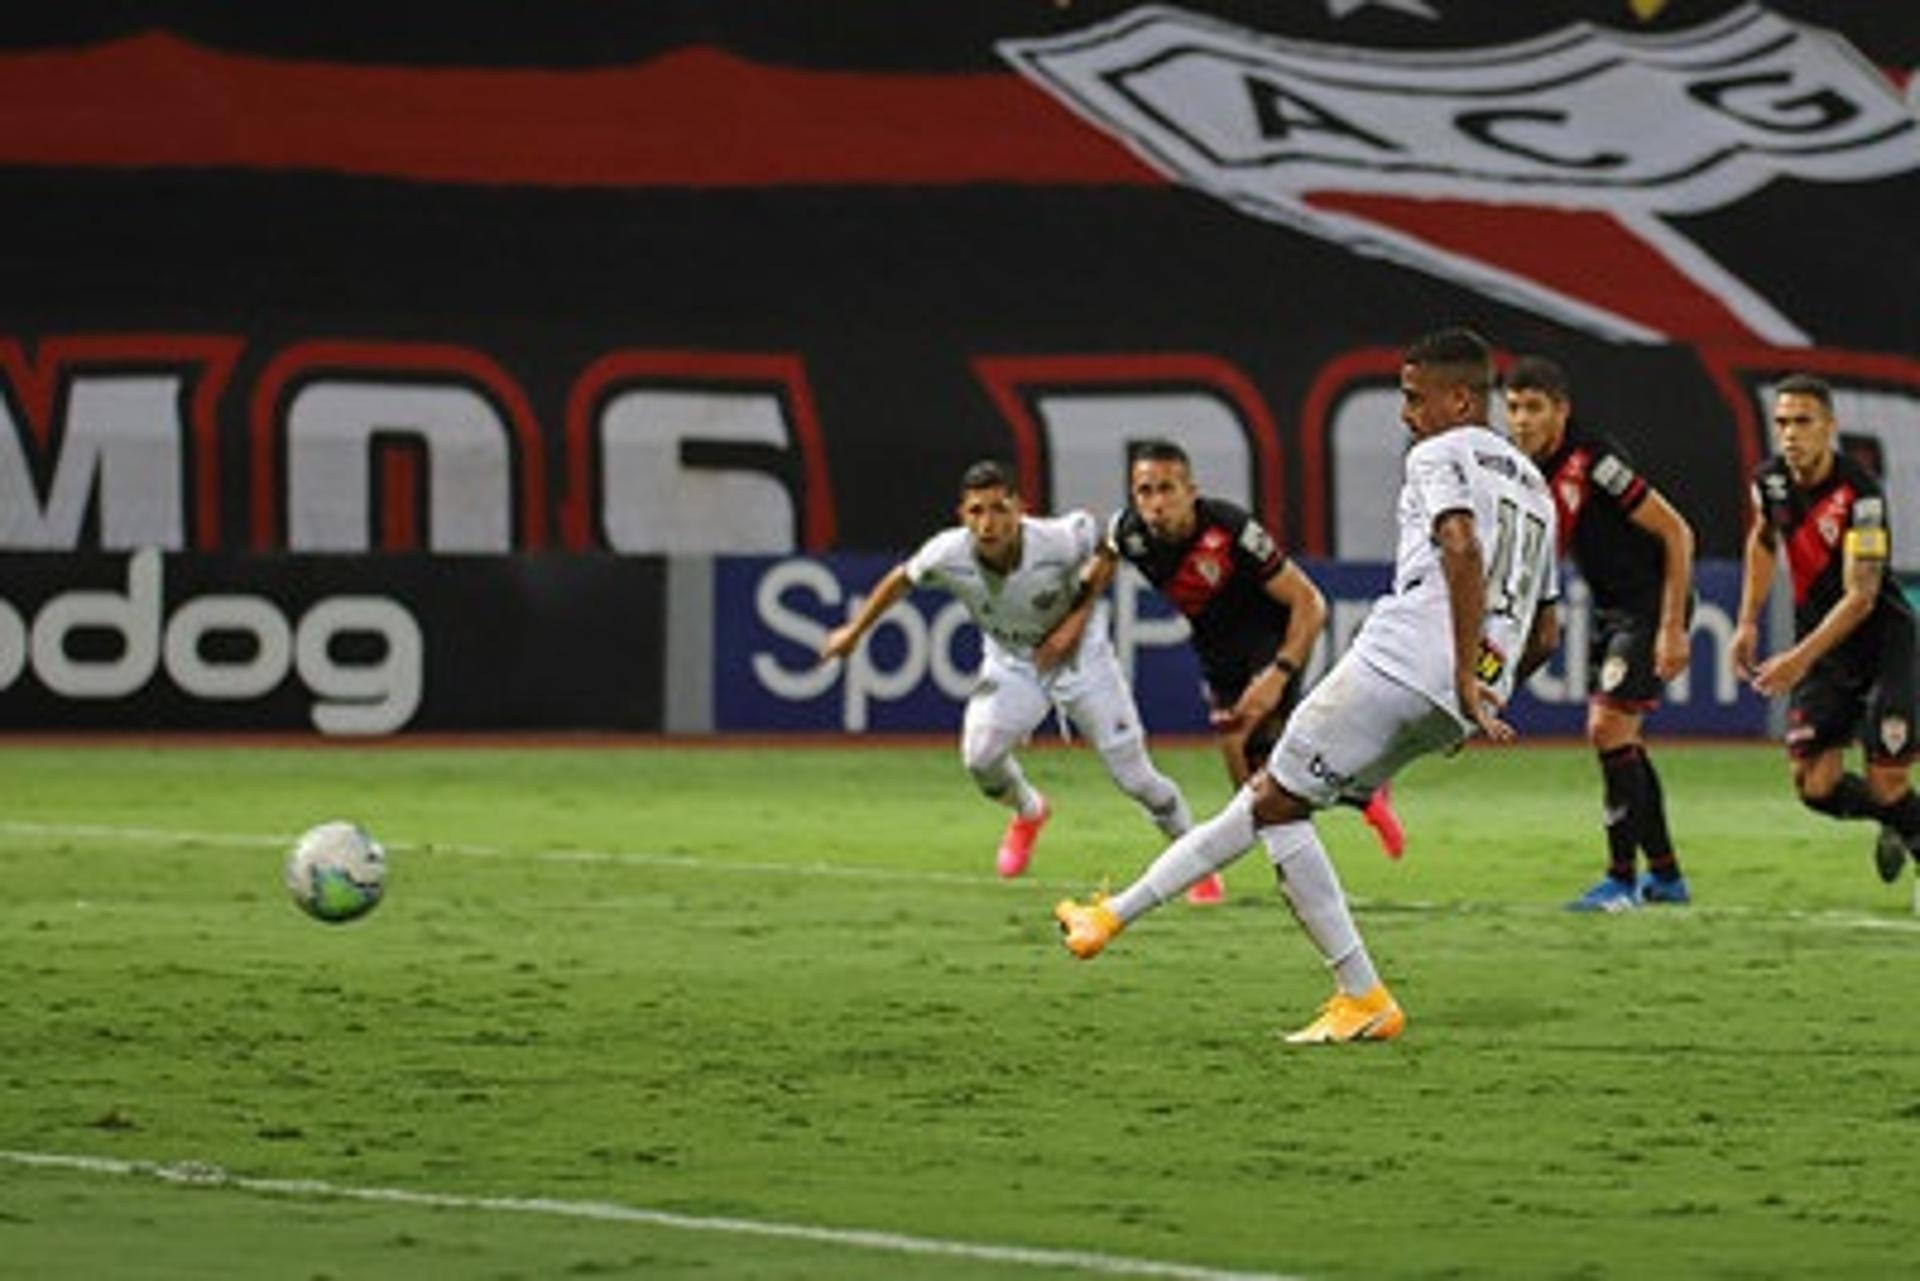 Keno foi o nome da noite do Galo ao marcar três gols na vitória por 4 a 3 sobre o Atlético-GO